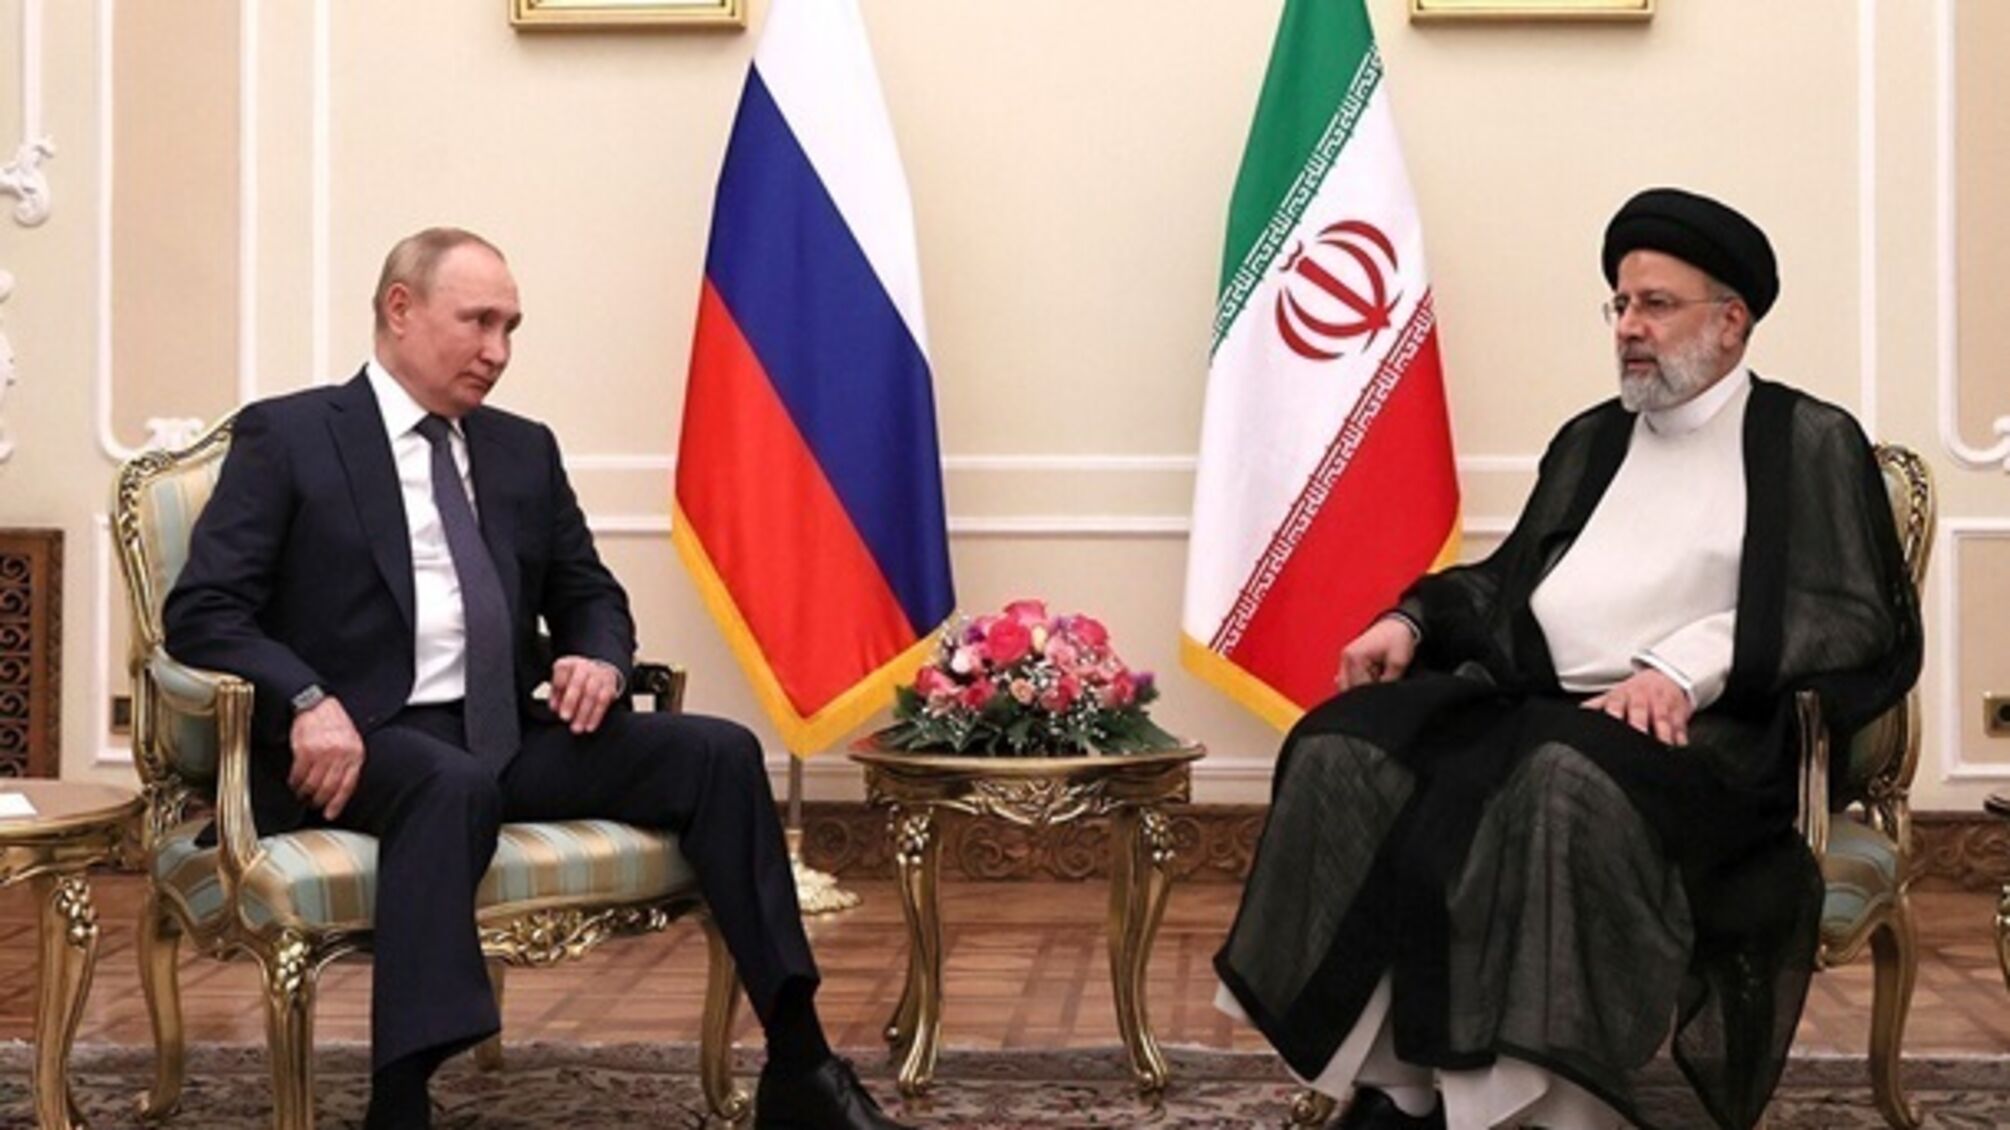 Иран и россия в ближайшее время могут договориться о передаче ракет Fateh-110 и Zolfaghar, – ISW